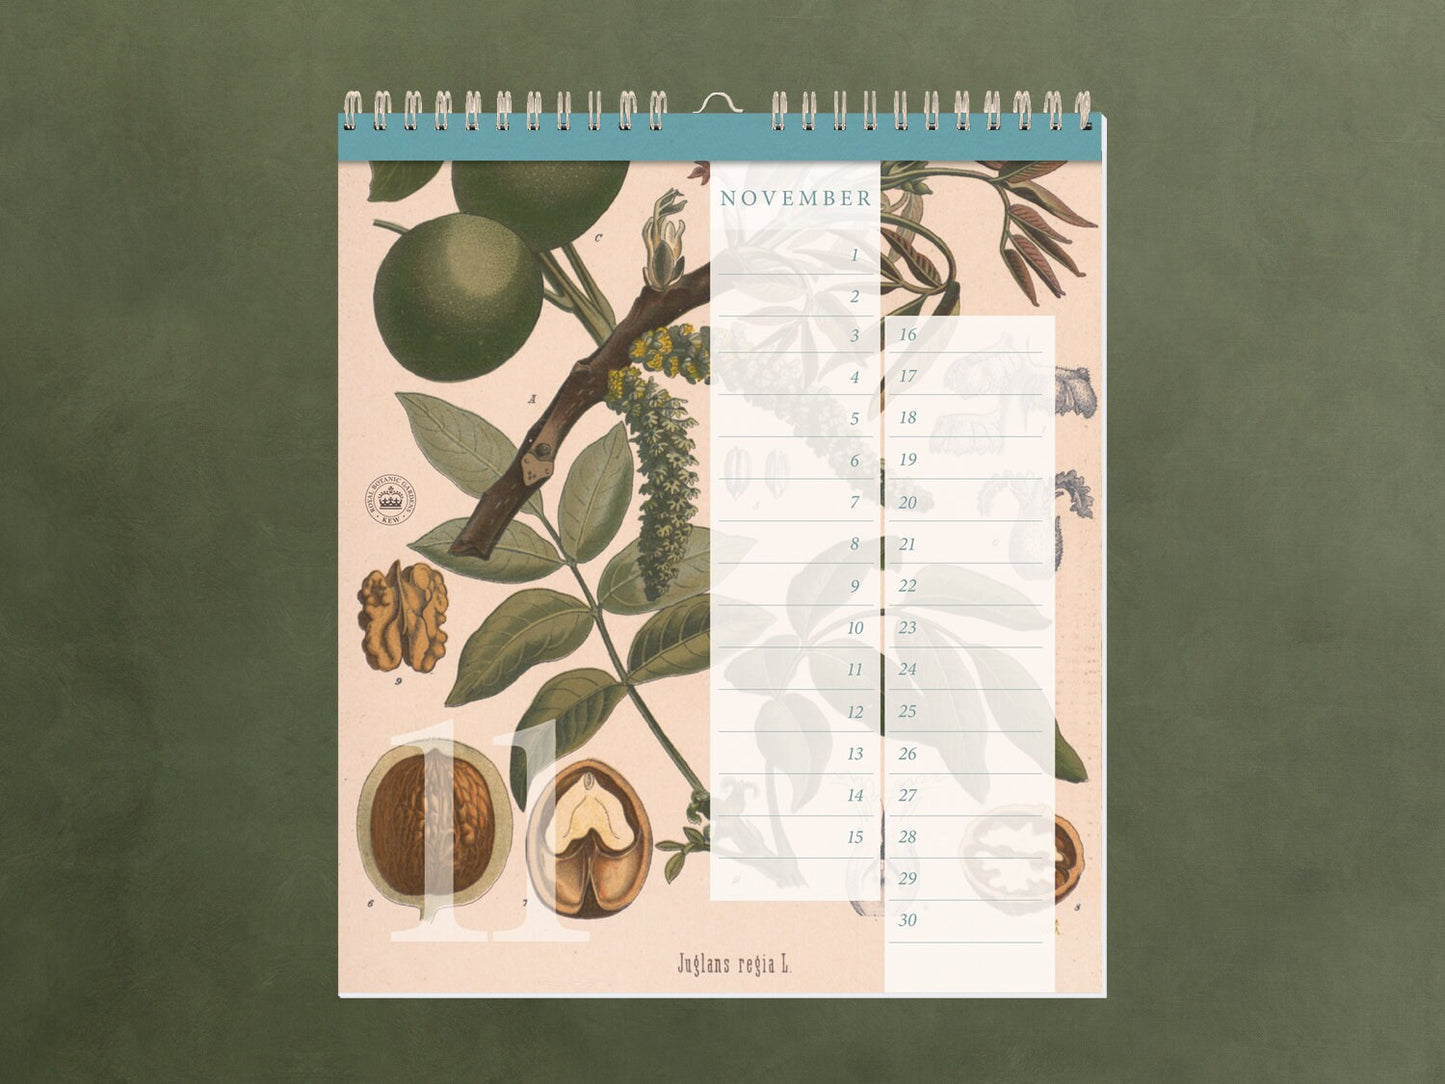 edler Geburtstagskalender ›Kew Gardens‹, immerwährender Kalender, Geburtstage, Natur, Illustrationen, Pflanzen, Garten, Organizer, Geschenk